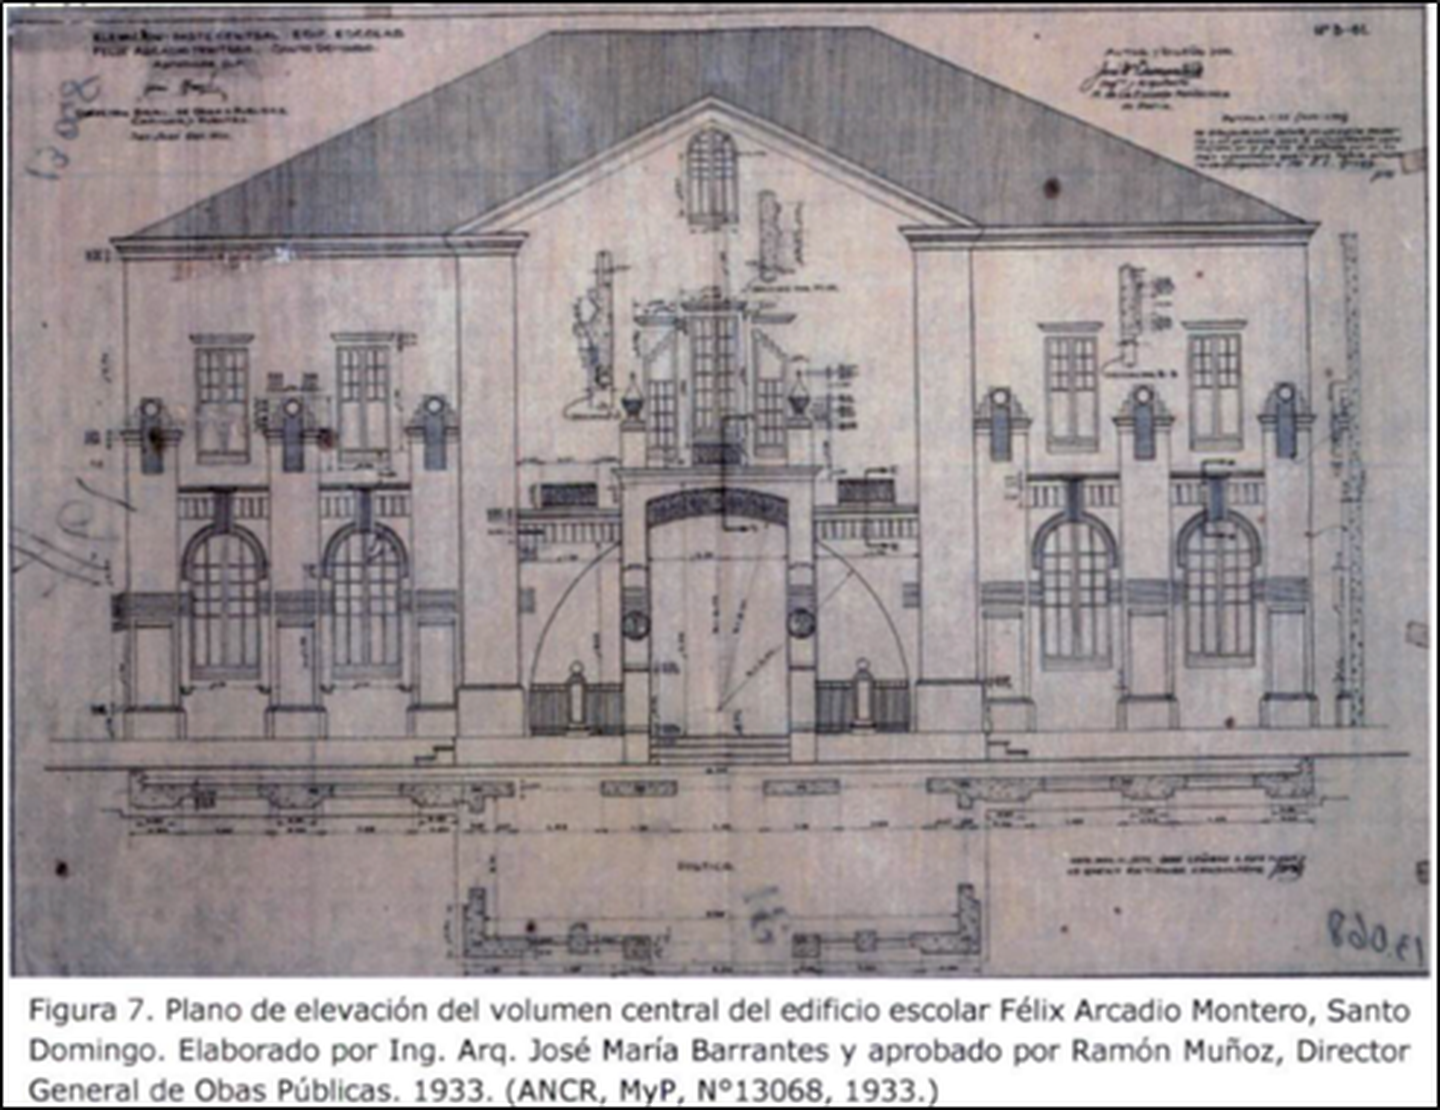 Esta imagen histórica muestra los planos de la escuela.

Fotografía: Centro de Patrimonio